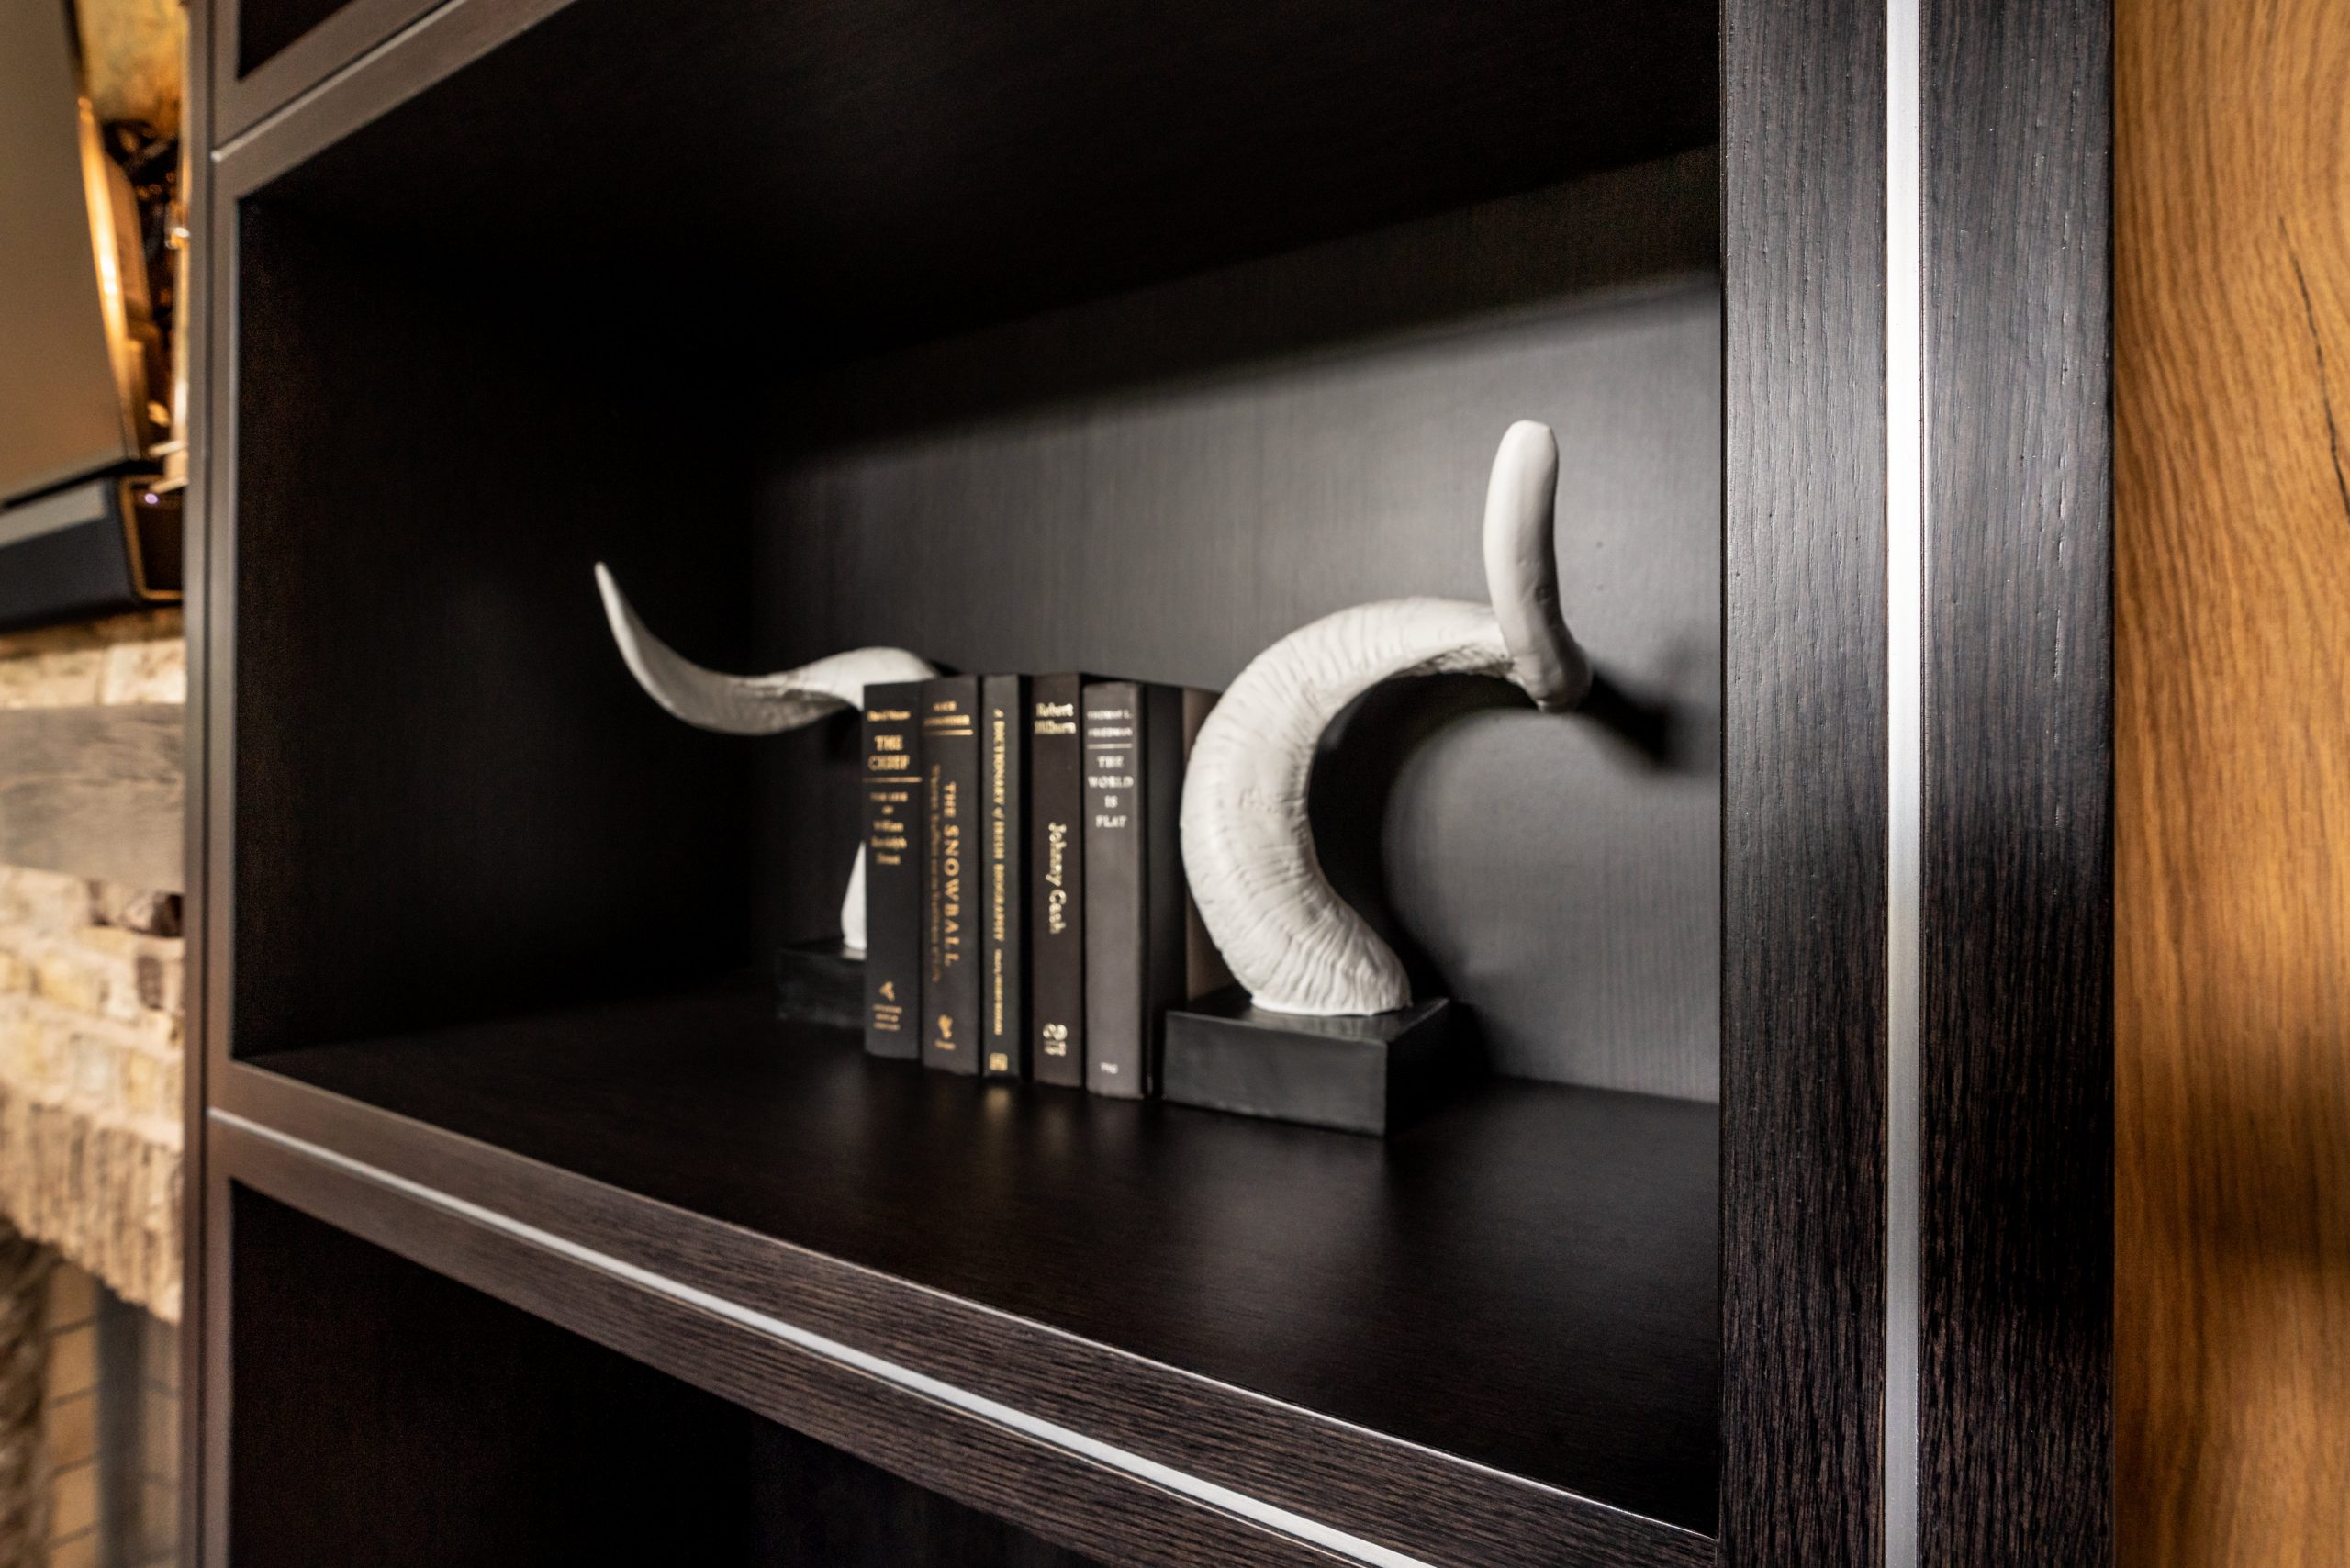 custom book shelves designed by The Jones Studio